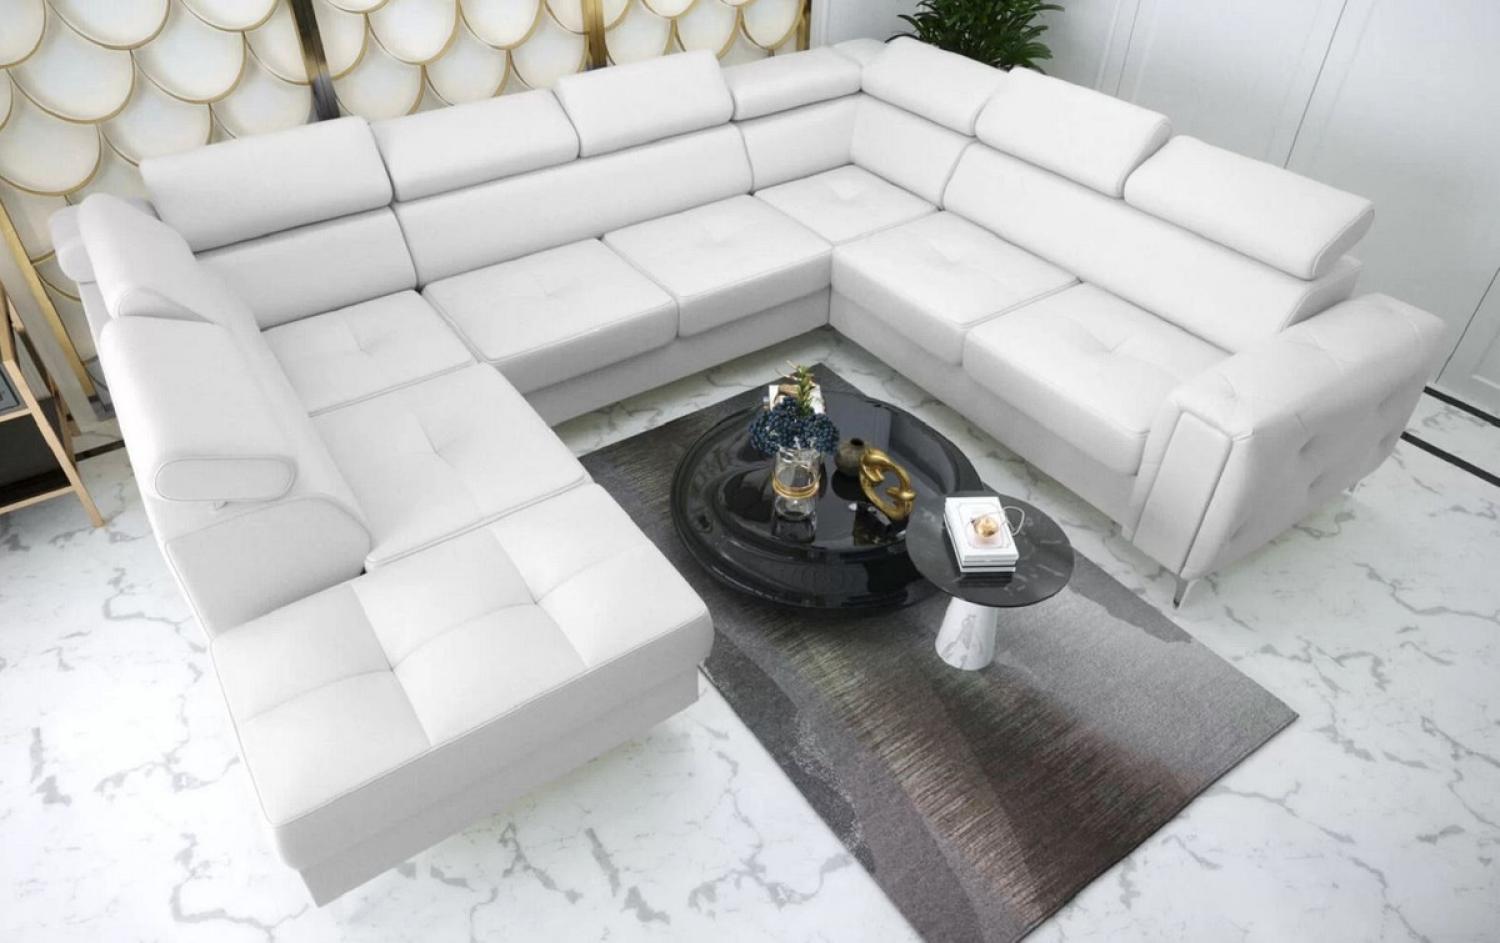 Casa Padrino Luxus Leder Wohnlandschaft Weiß / Silber 350 x 255 x H. 78-99 cm - Naturleder U-Form Sofa mit verstellbaren Kopfstützen - Wohnzimmer Möbel - Leder Möbel - Luxus Möbel Bild 1